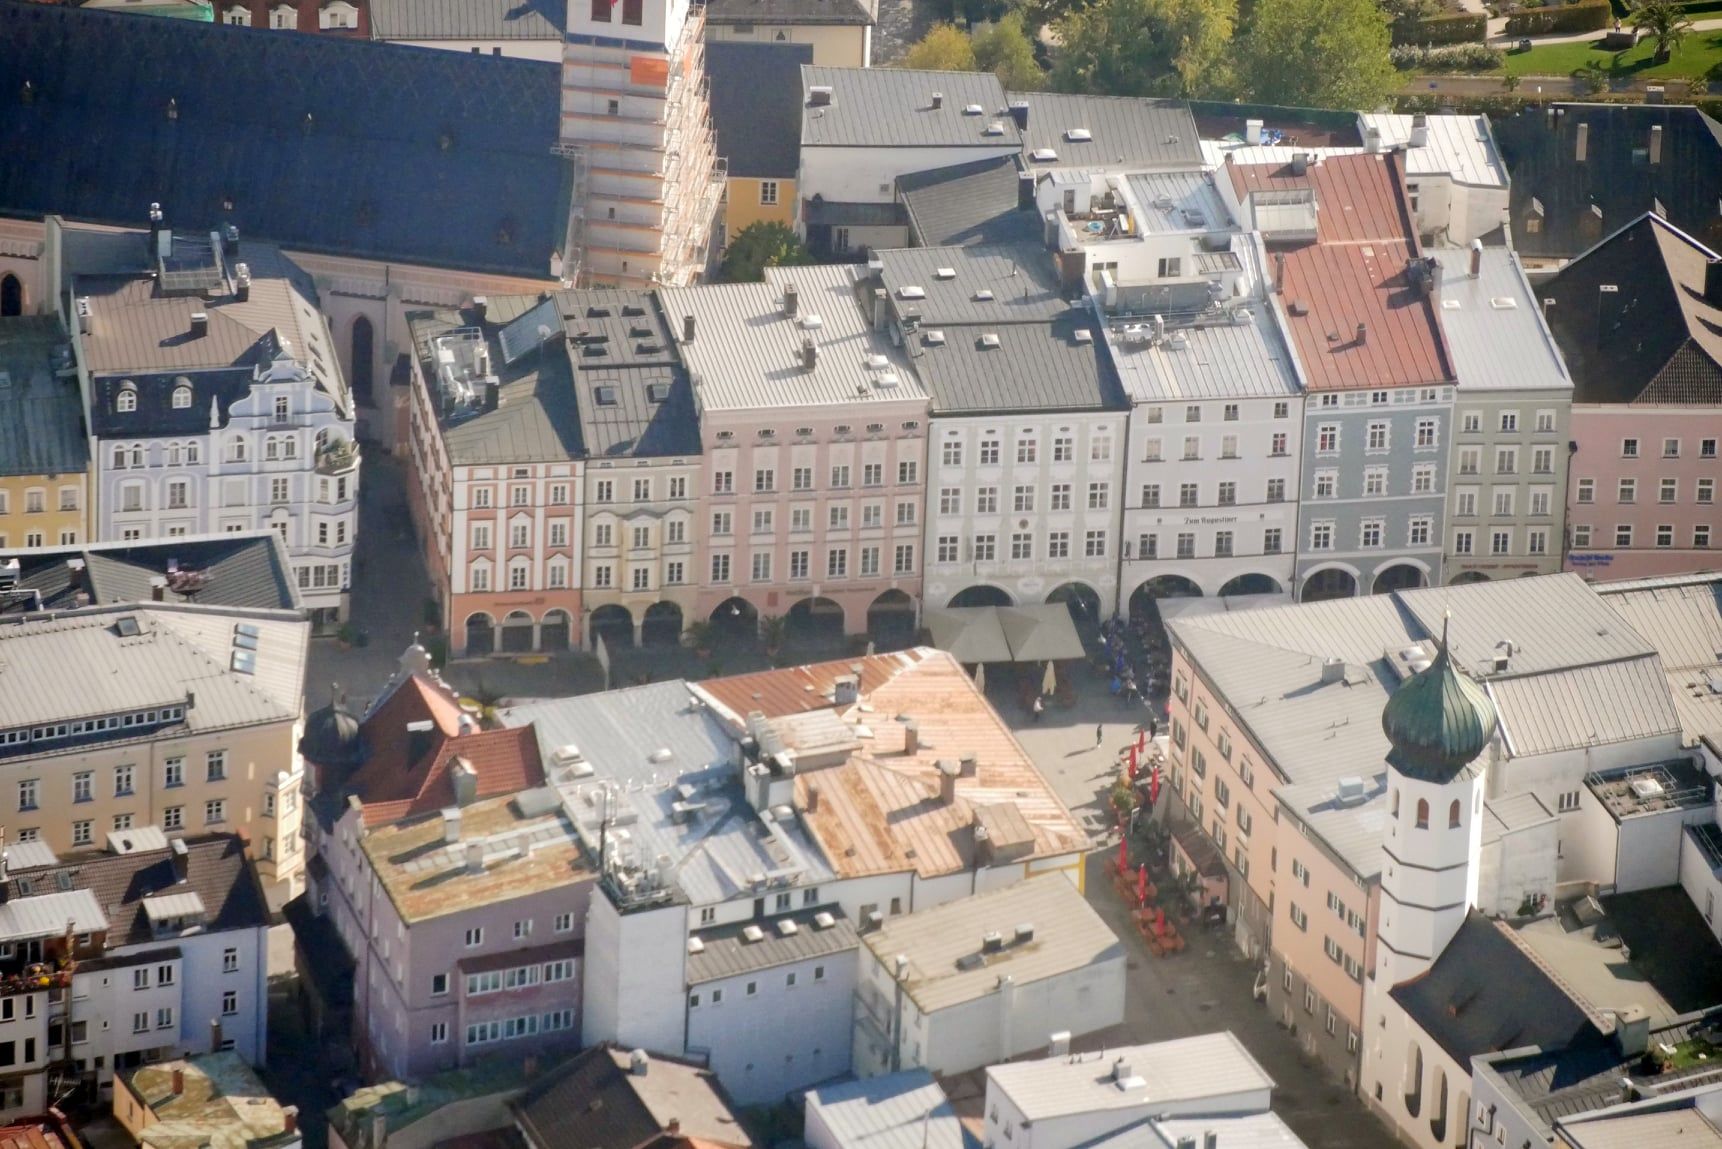 Luftaufnahme von Rosenheims Innenstadt